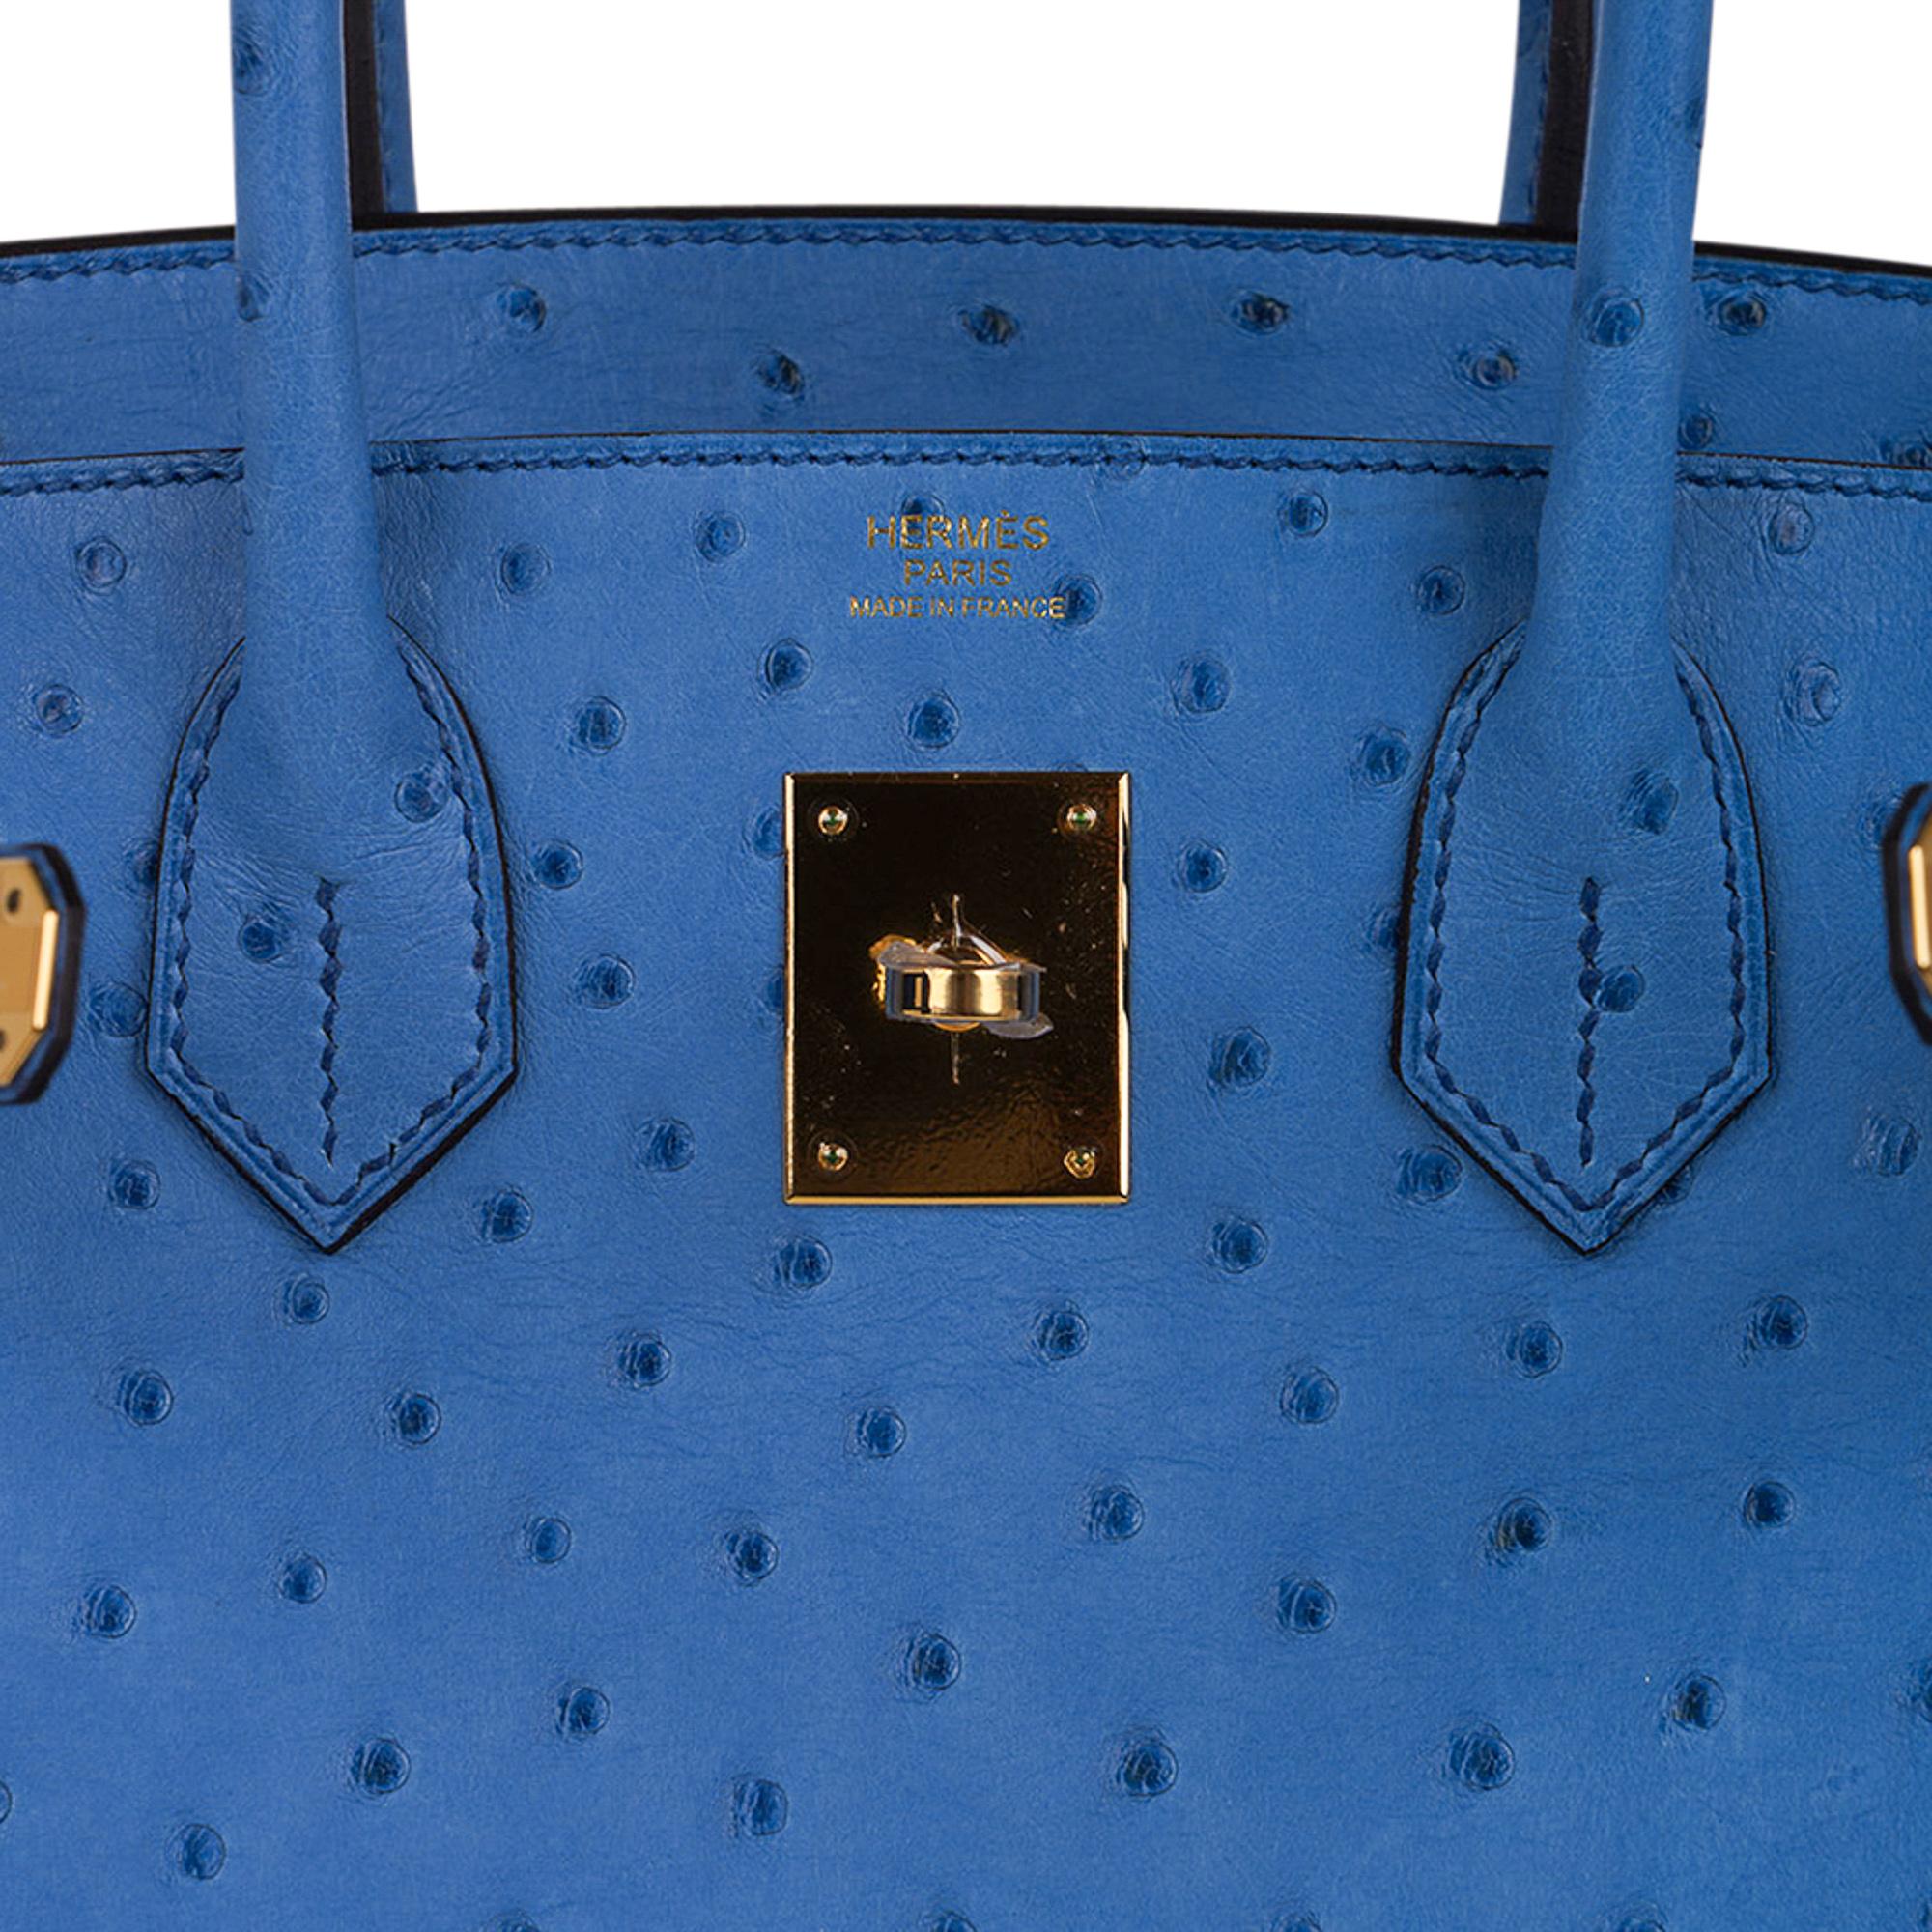 Hermes Birkin 30 Bleu Mykonos Ostrich Bag Gold Hardware In New Condition For Sale In Miami, FL